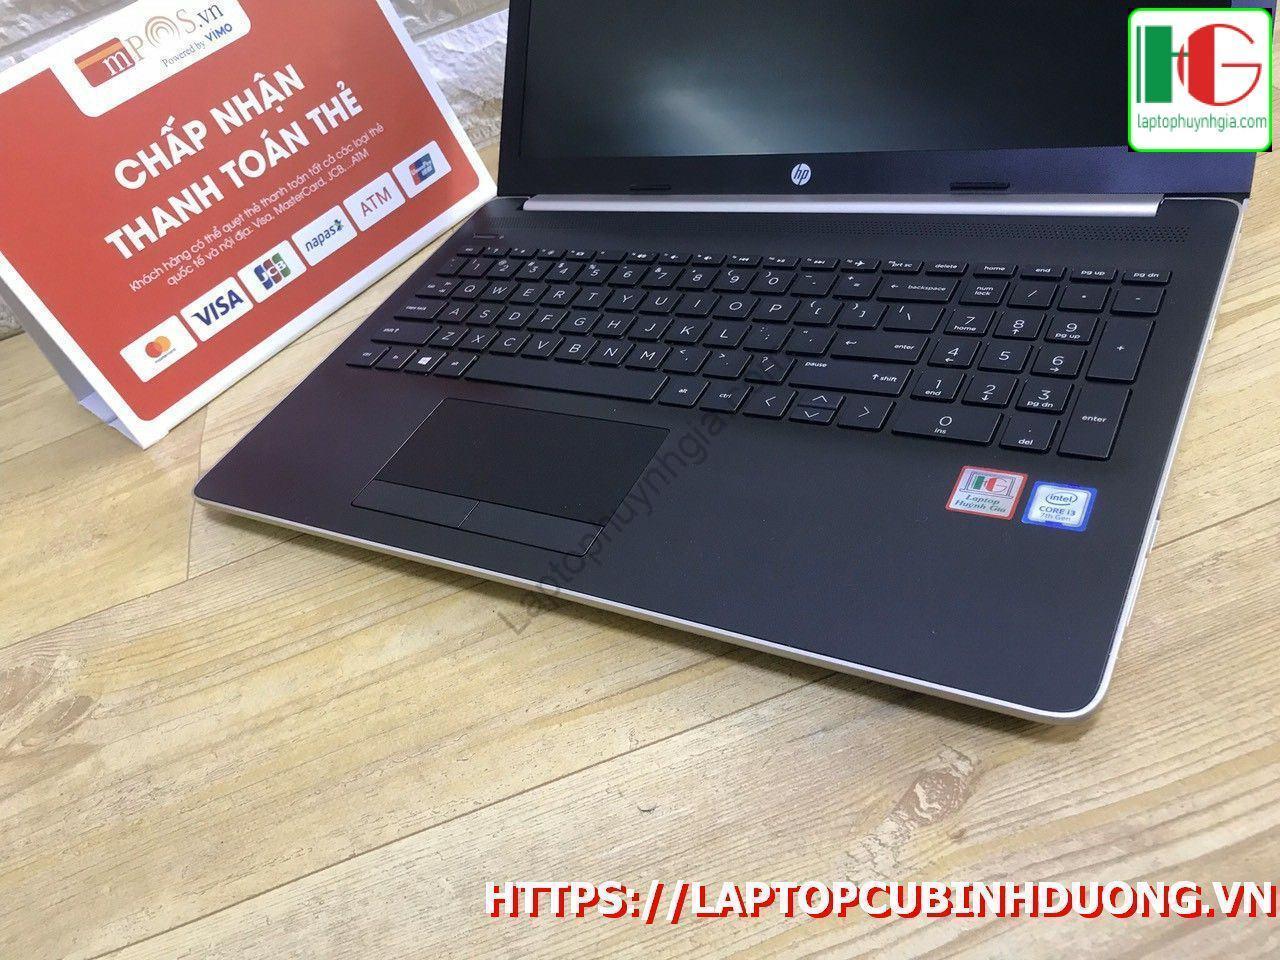 Laptop Hp 15 I3 7020u 4g 500g Lcd 15 Full Laptopcubinhduong.vn 4 [kích Thước Gốc] Result